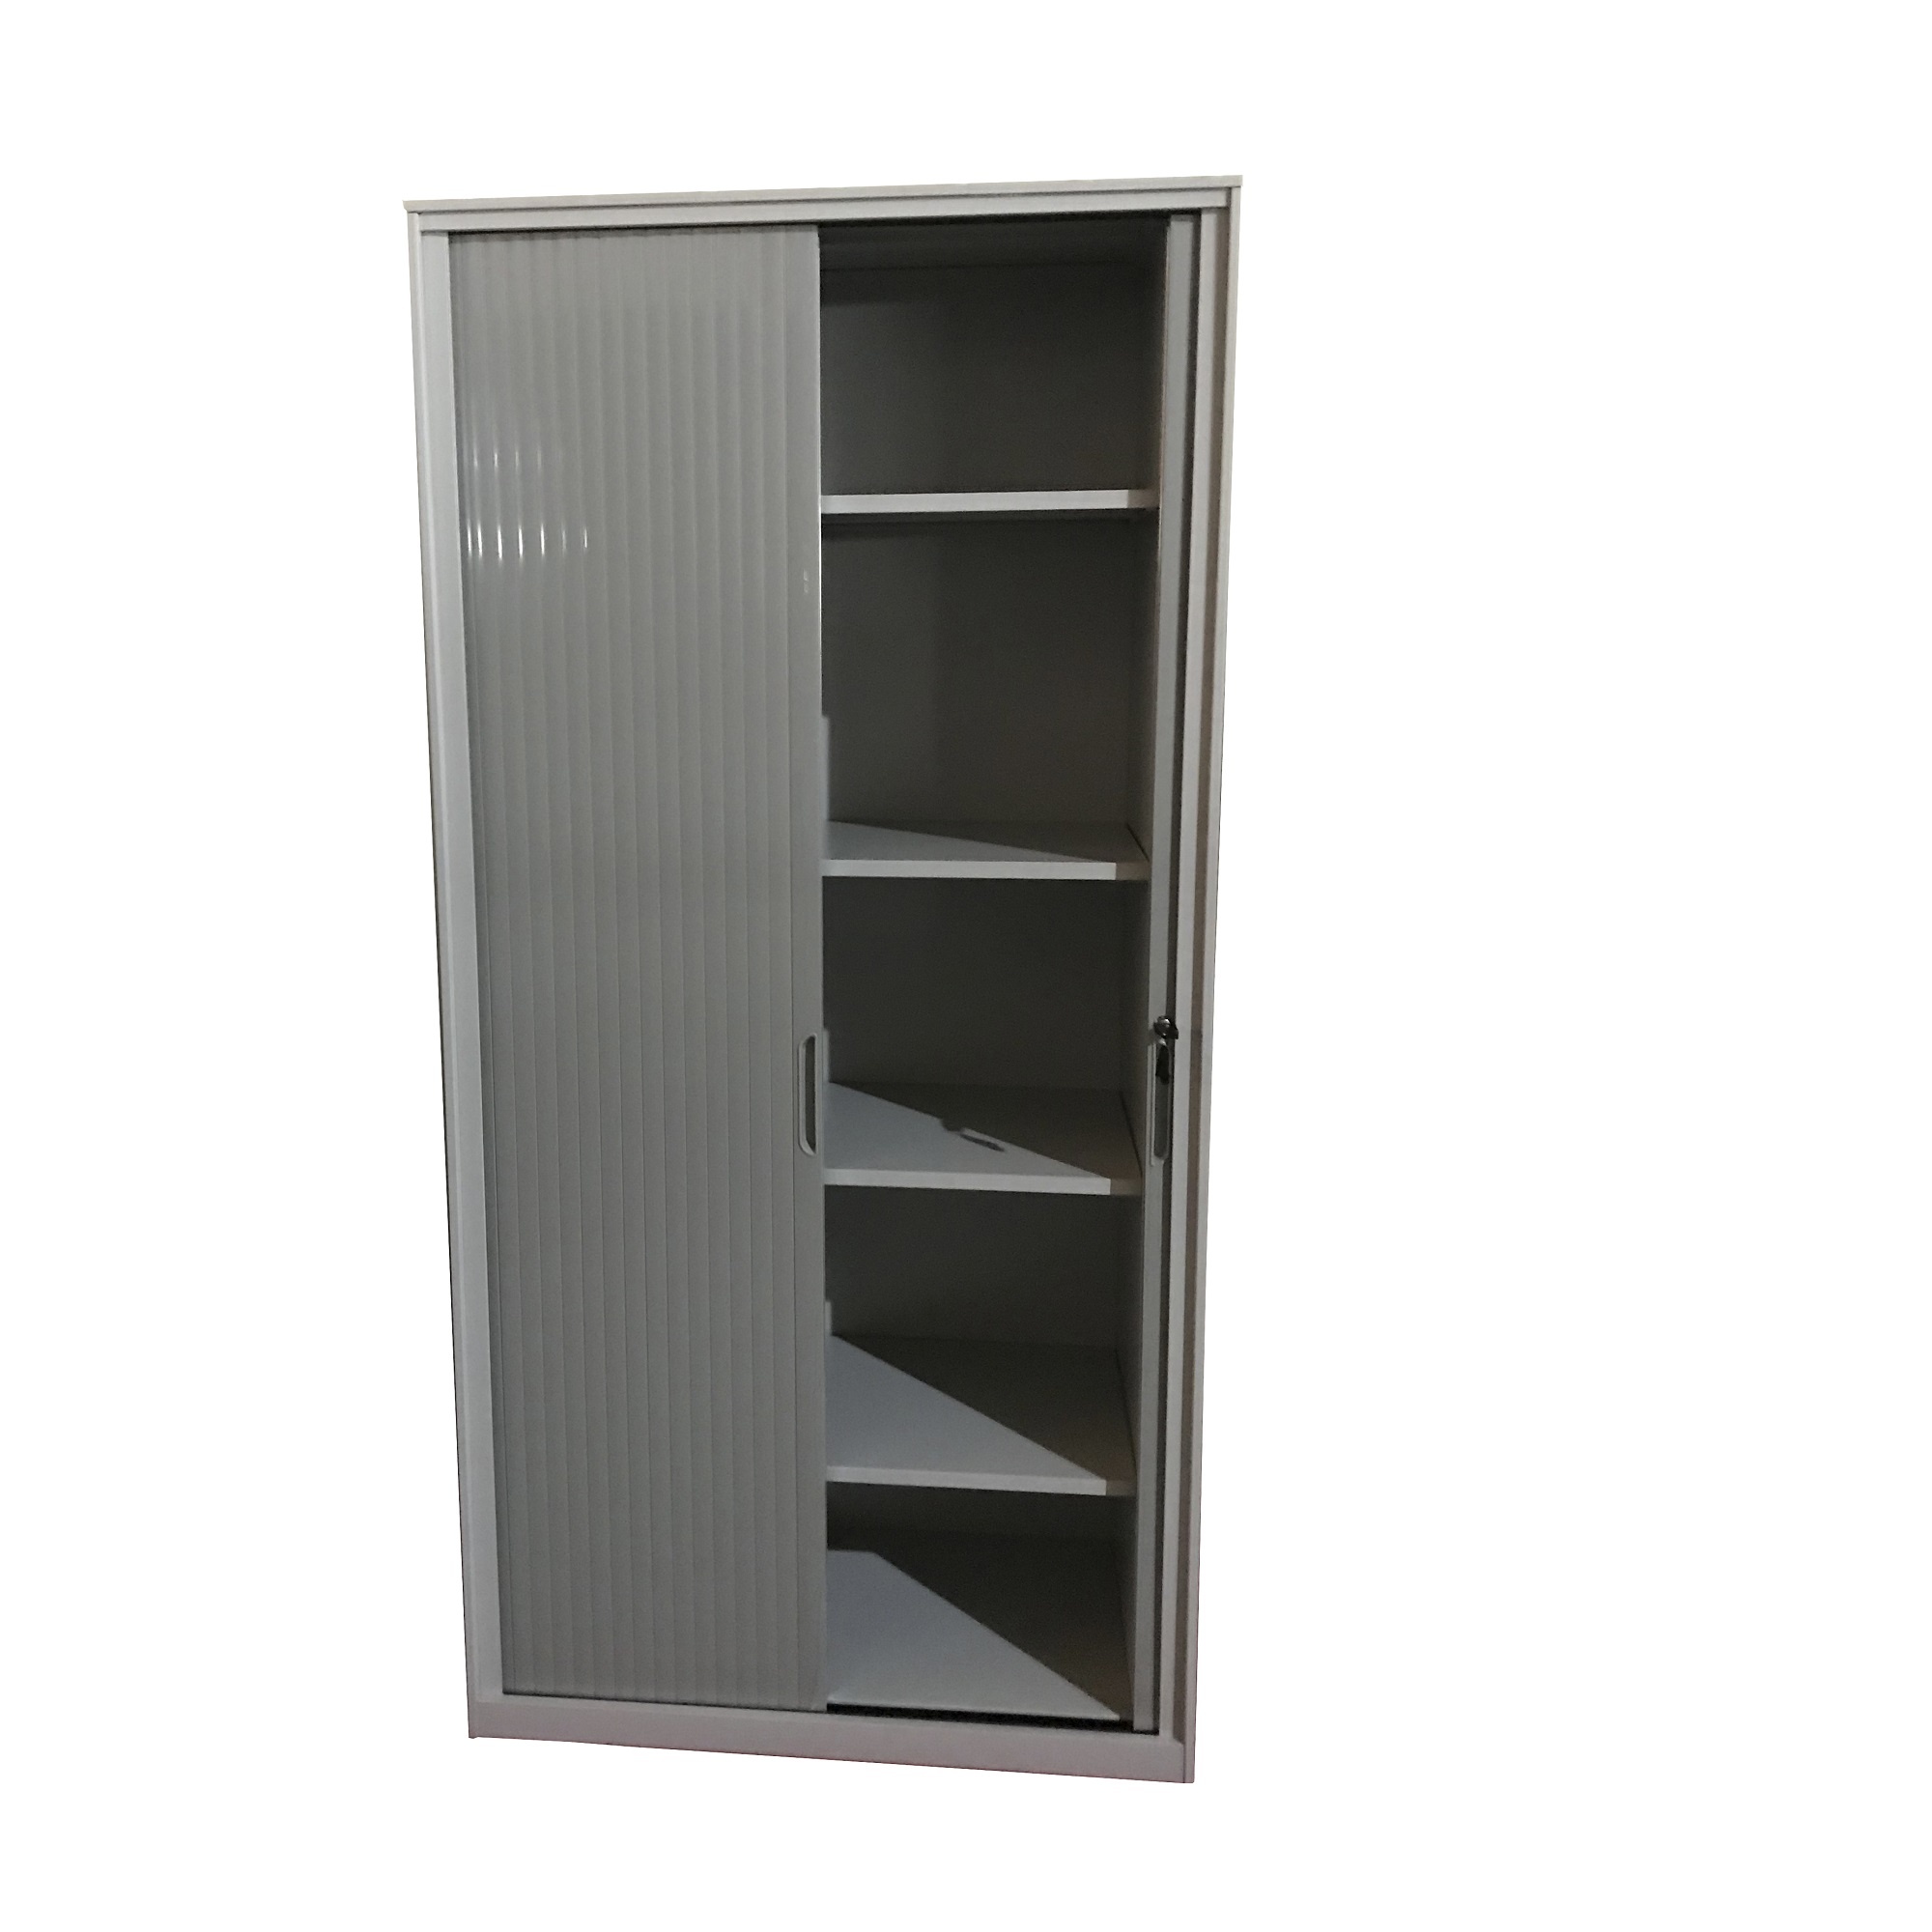 Horizontal Roller Shutter Cabinet Steel Office File Cupboard